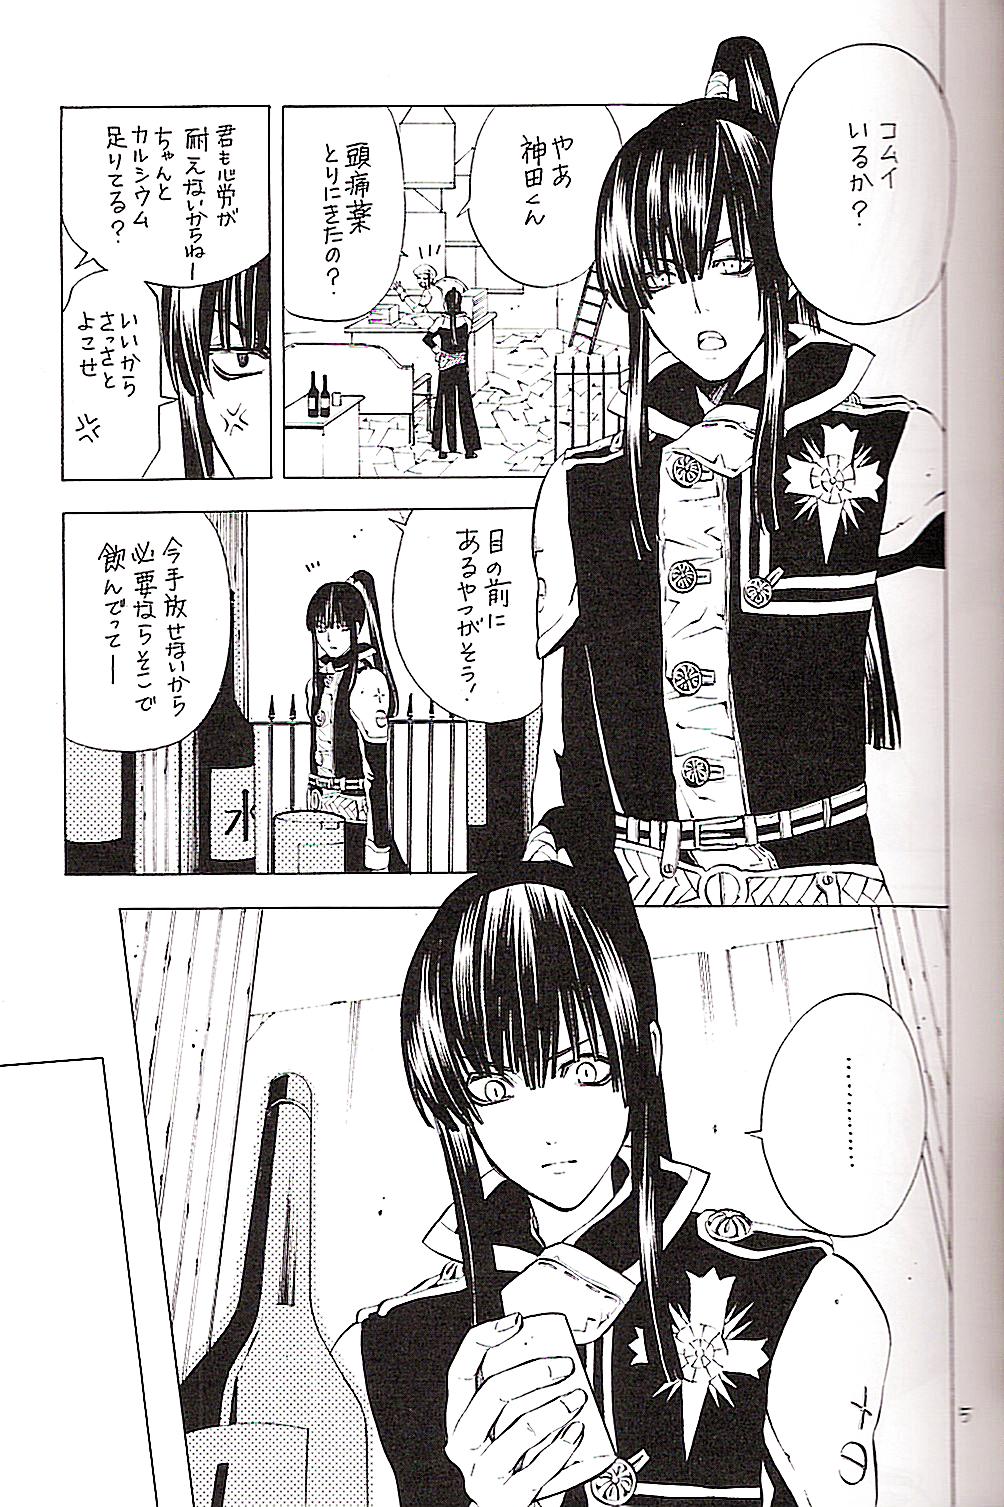 (Mimiket 12) [A.A.O (Shinohara Hana)] CRUSADER (D.Gray-man) page 5 full